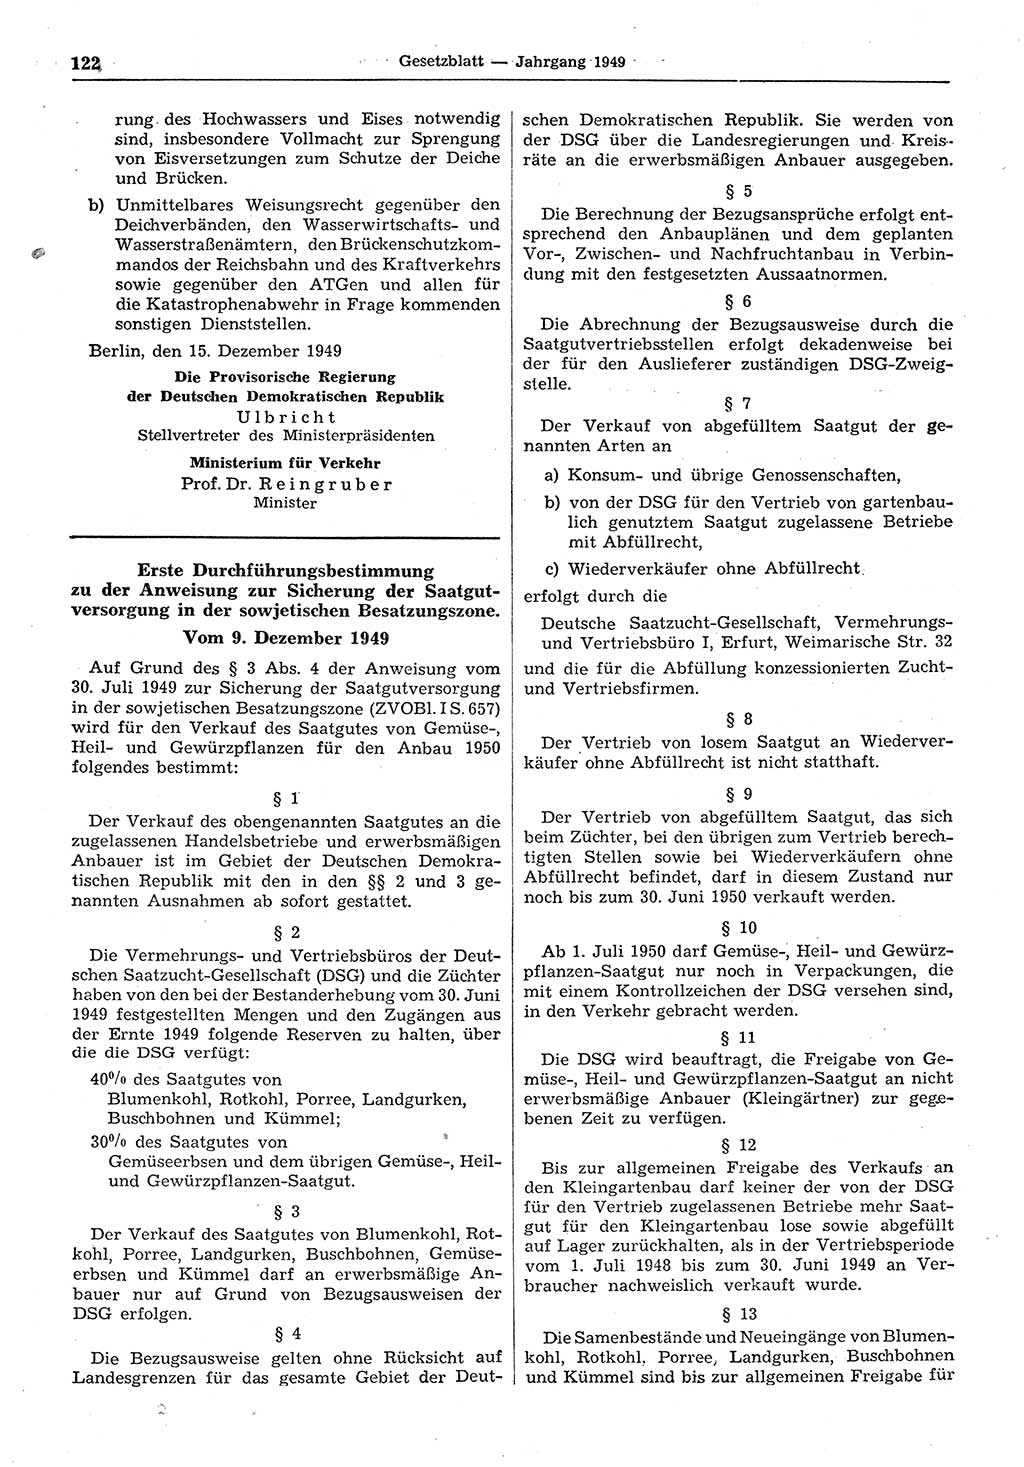 Gesetzblatt (GBl.) der Deutschen Demokratischen Republik (DDR) 1949, Seite 122 (GBl. DDR 1949, S. 122)